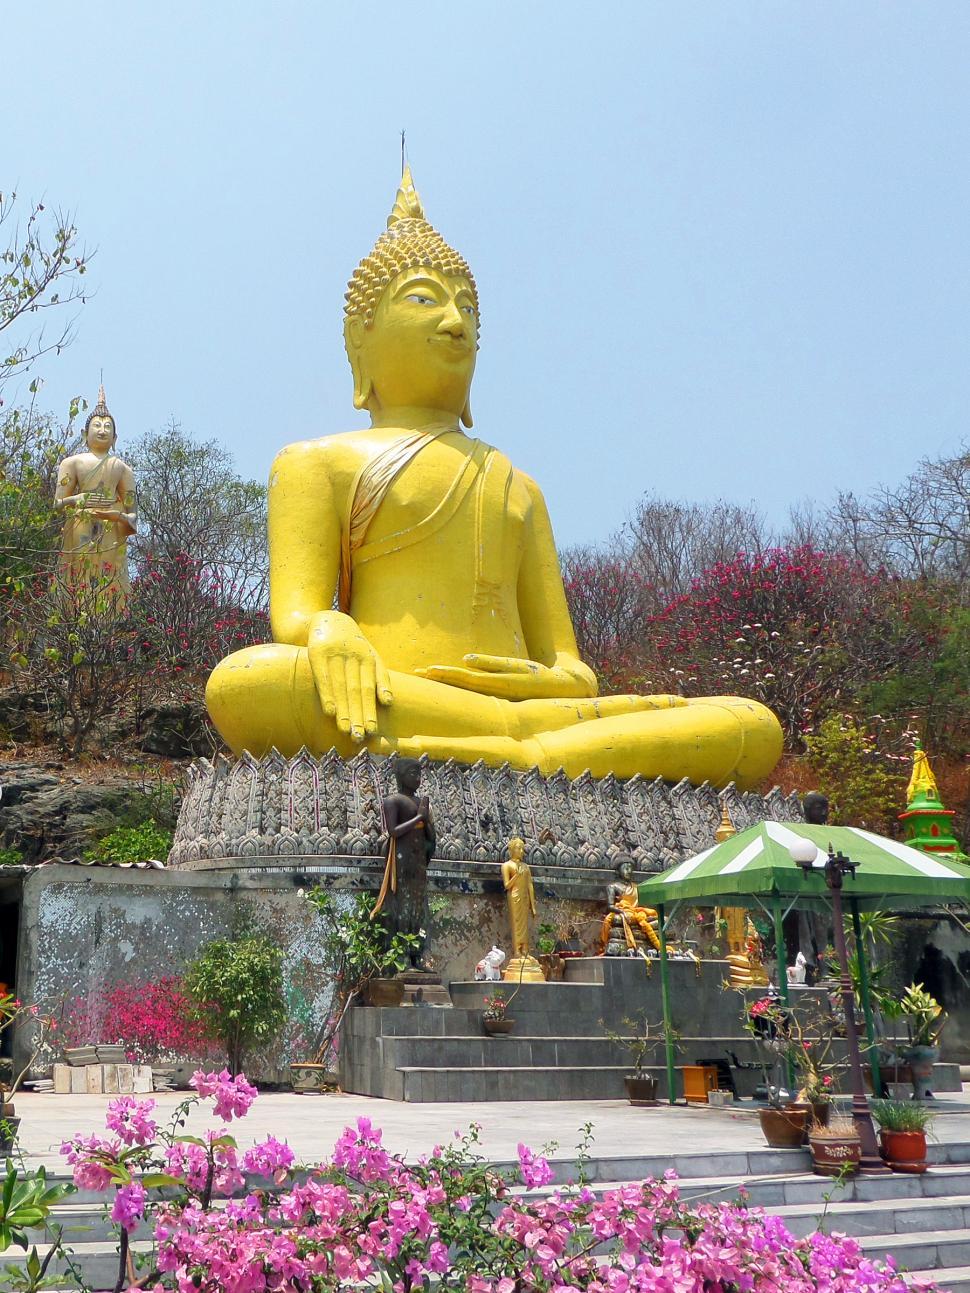 Free Image of Giant Buddha 